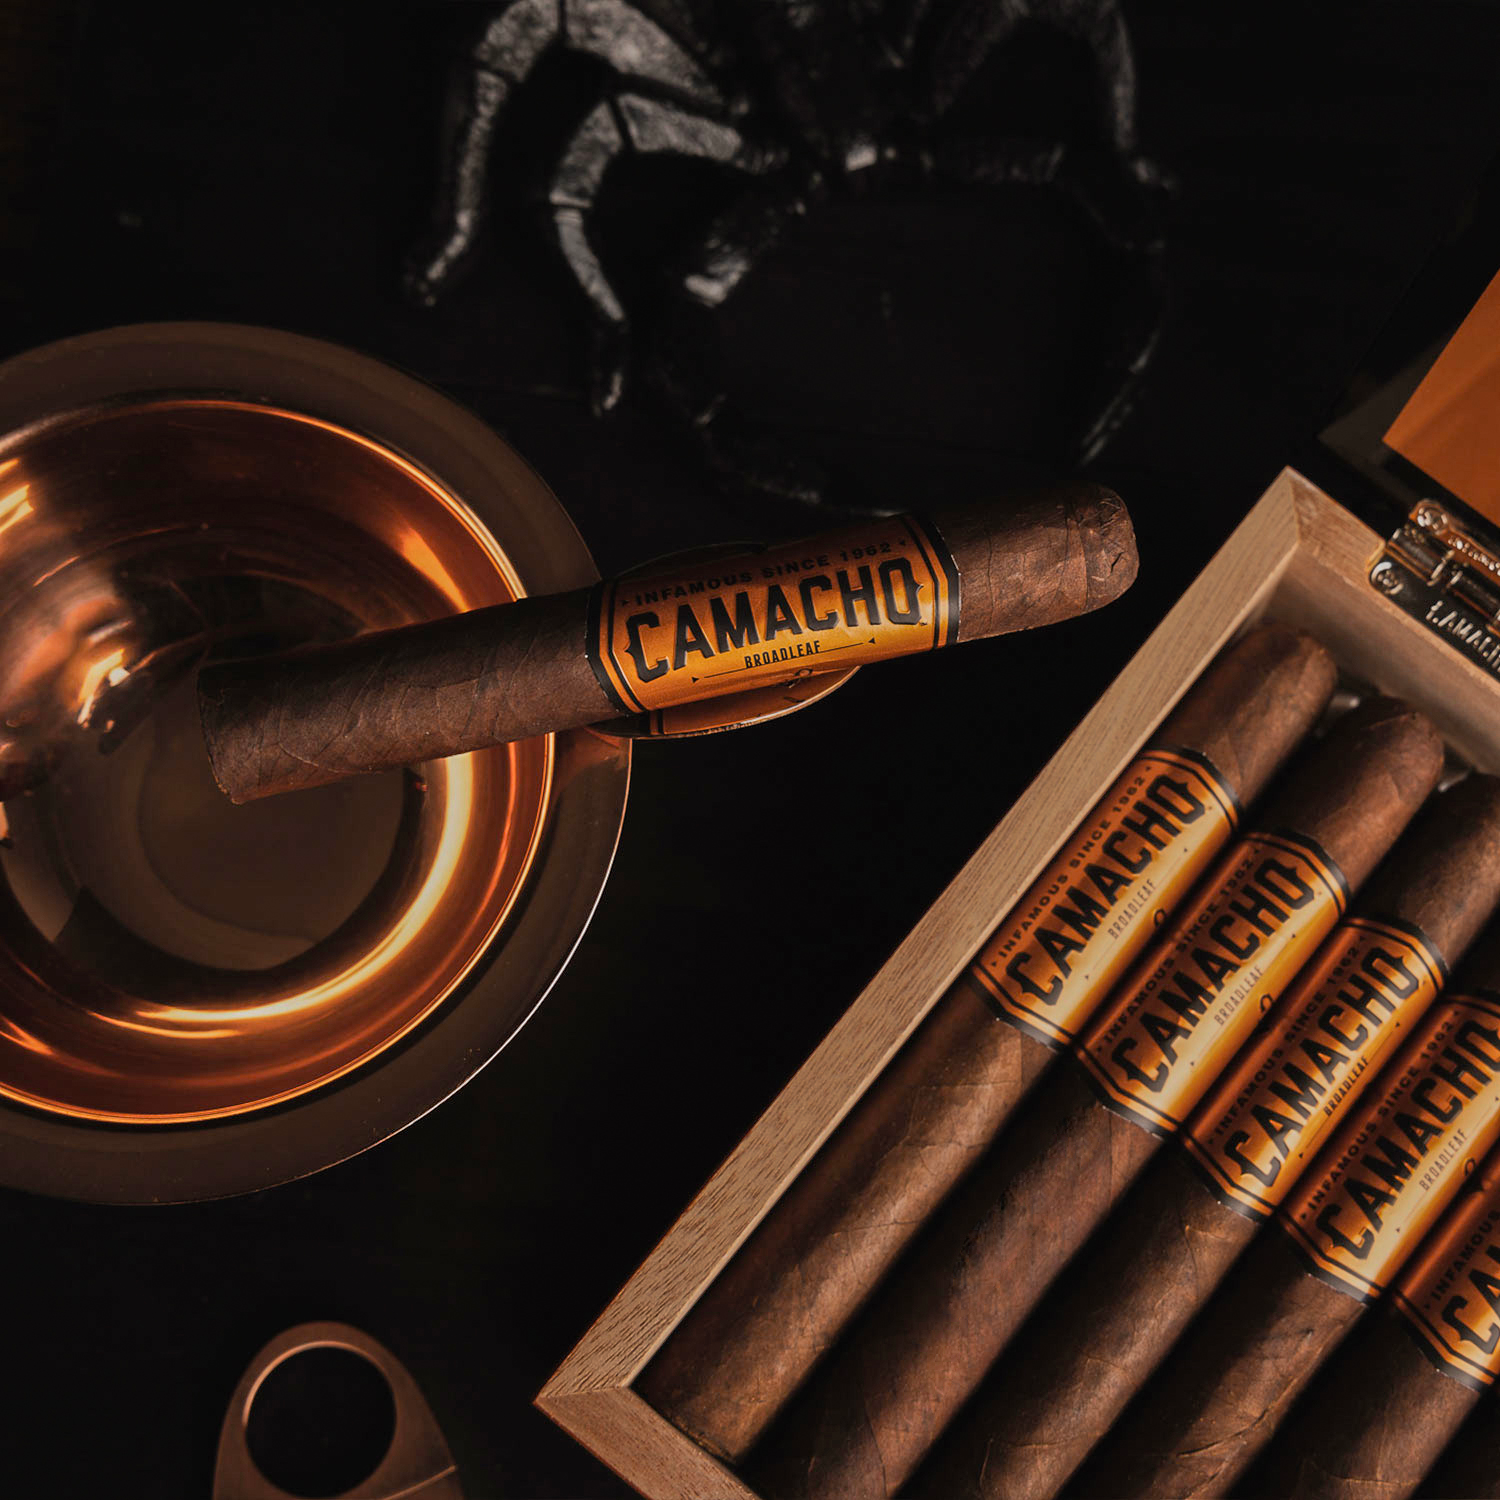 A box of 20 Camacho Broadleaf cigars with a darker broadleaf wrapper